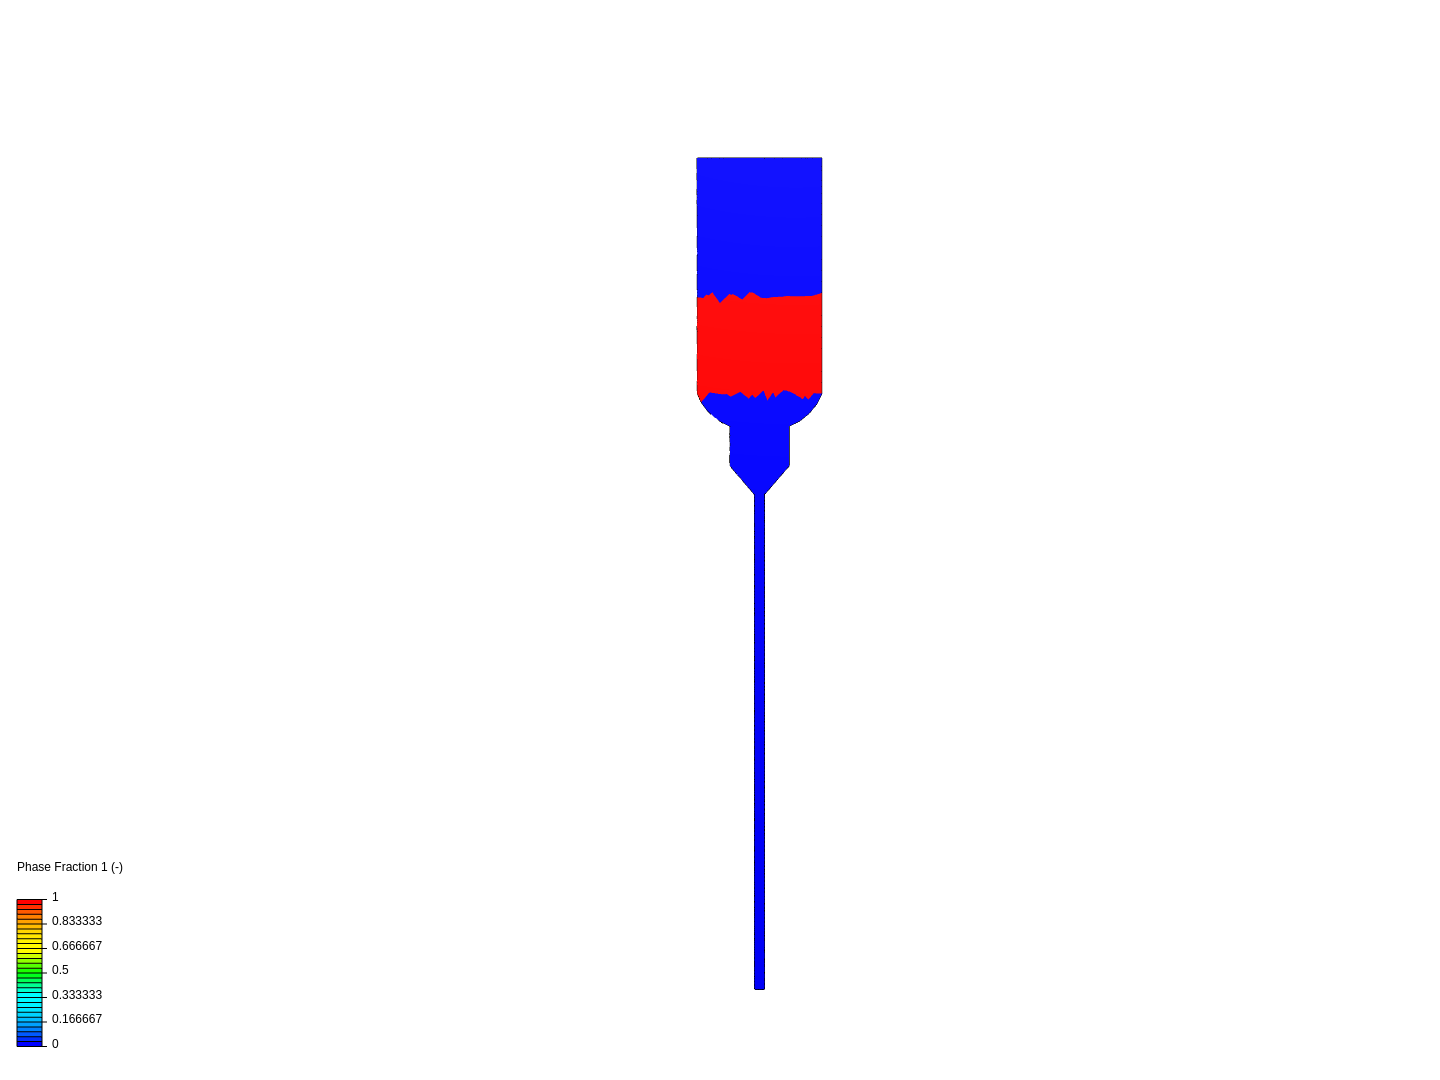 Bottle-straw image